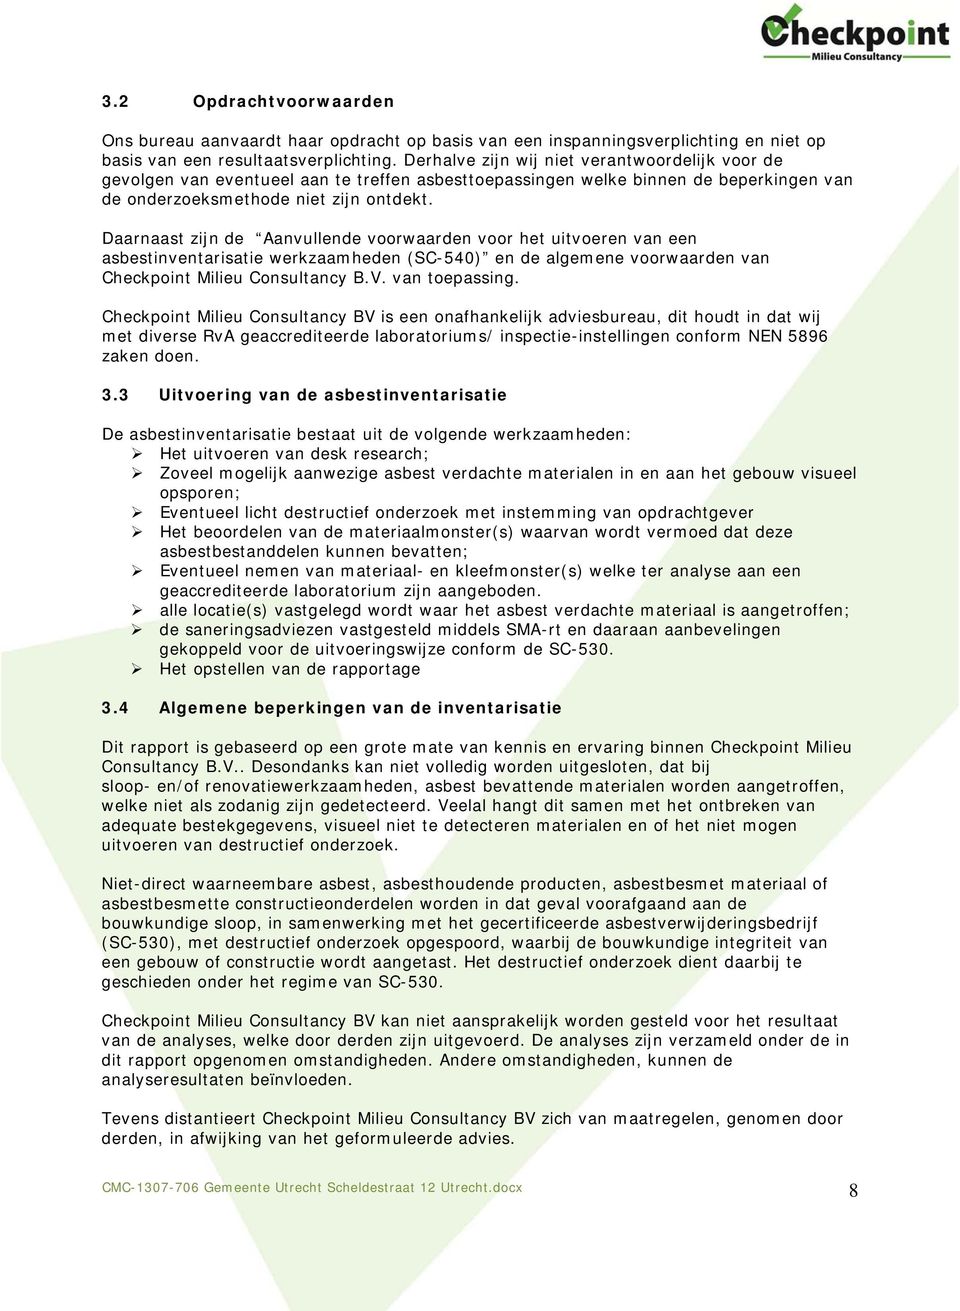 Daarnaast zijn de Aanvullende voorwaarden voor het uitvoeren van een asbestinventarisatie werkzaamheden (SC-540) en de algemene voorwaarden van Checkpoint Milieu Consultancy B.V. van toepassing.